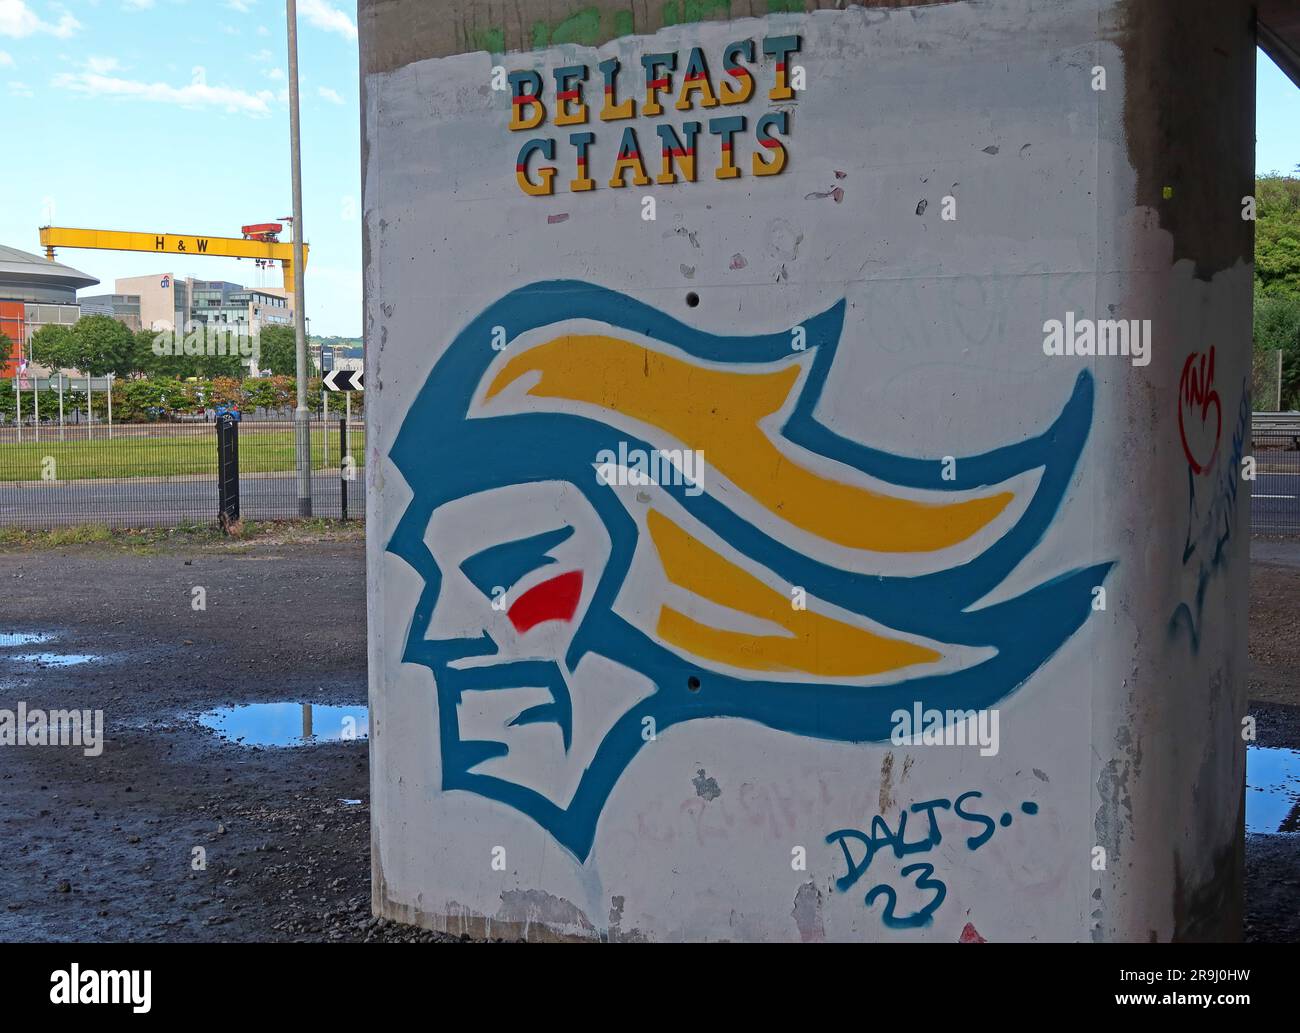 Graffiti dei Belfast Giants da Dalts 23, lungofiume, Titanic Quarter, in vista delle gru H&W Harland & Wolff Samson e Goliath & SSE Arena Foto Stock